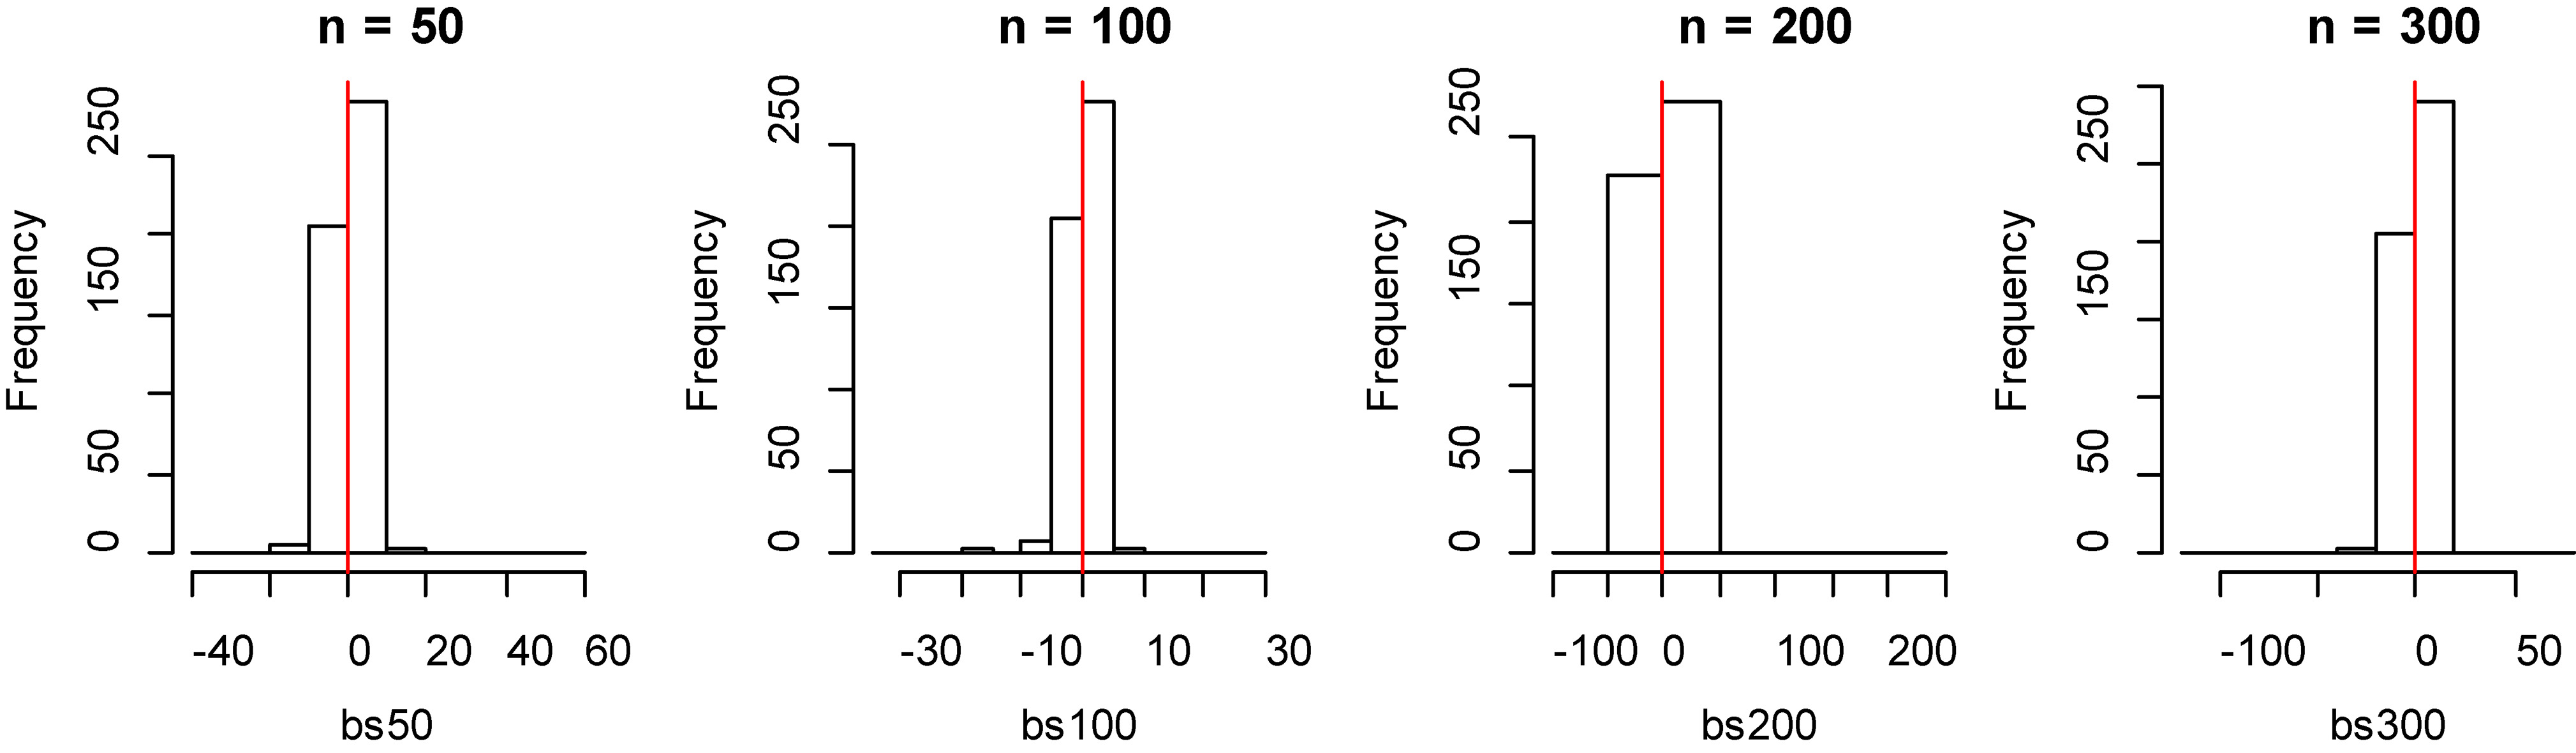 Histogram of bias for fitting data of B-spline method with model 2.